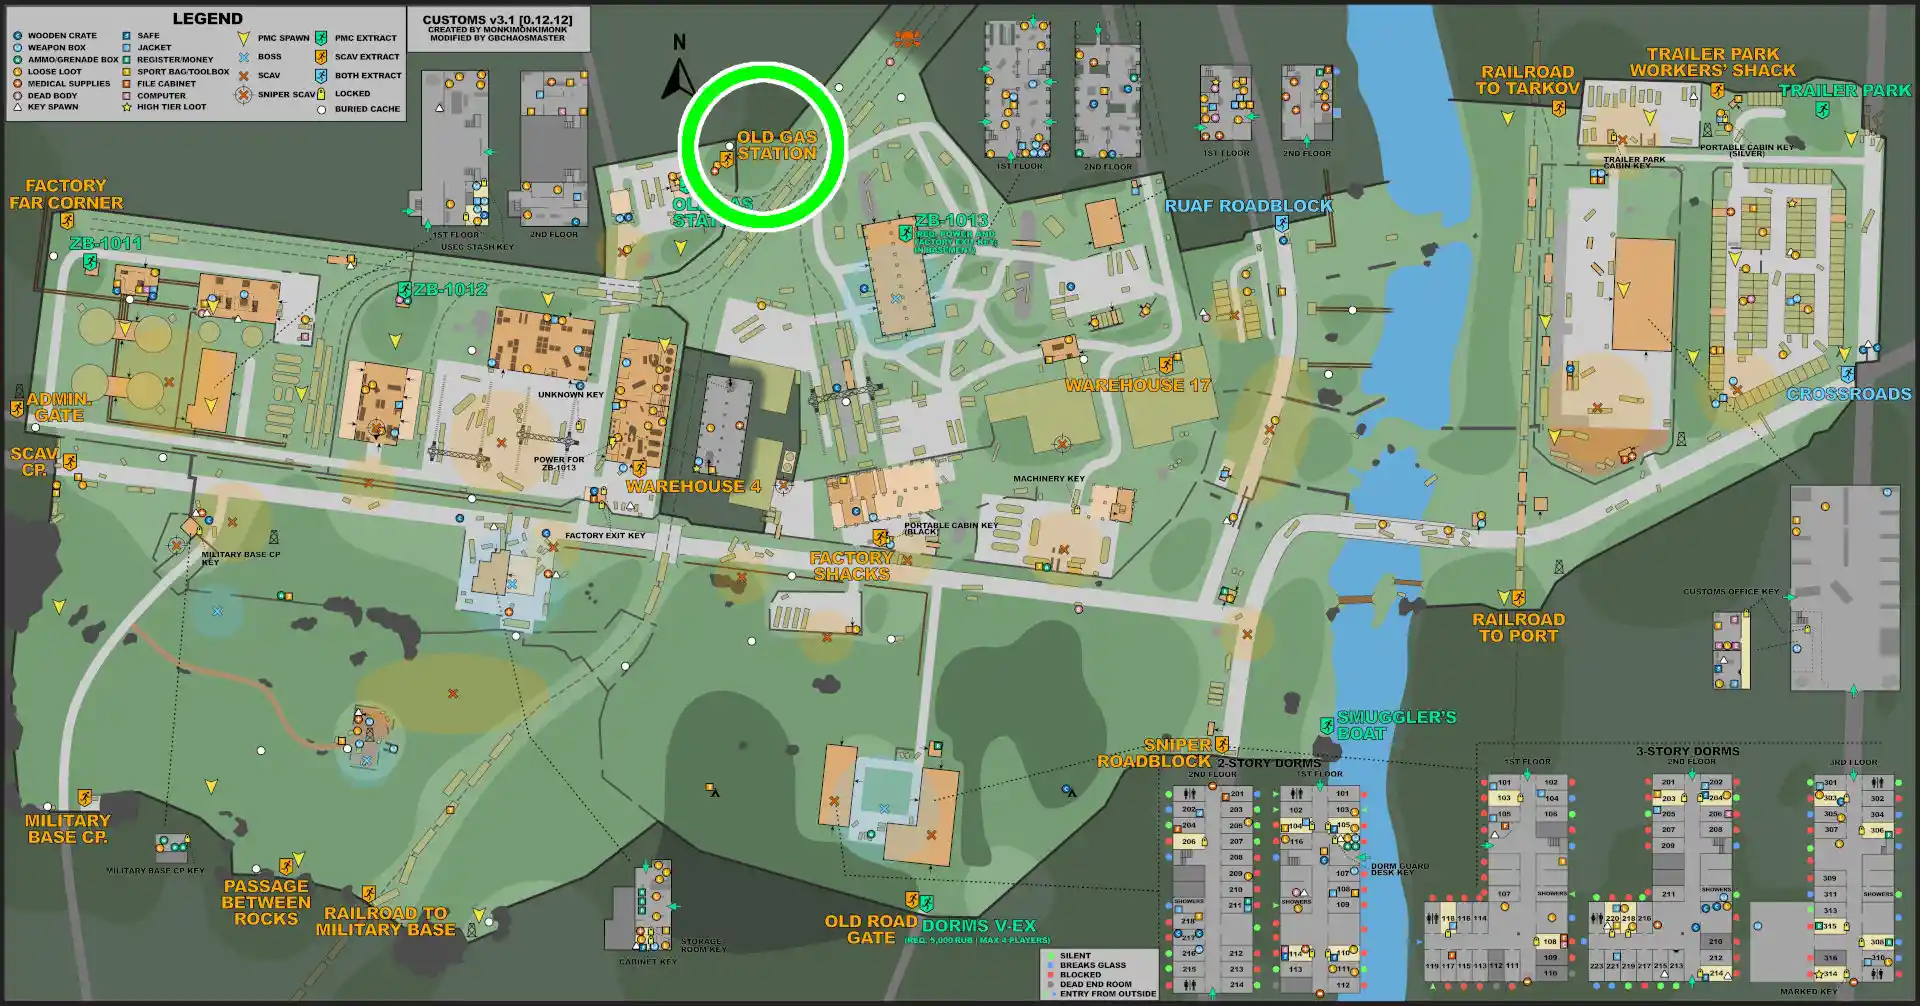 CUSTOMS-ESC-Old_Gas_Station_Gate-MAP.jpg